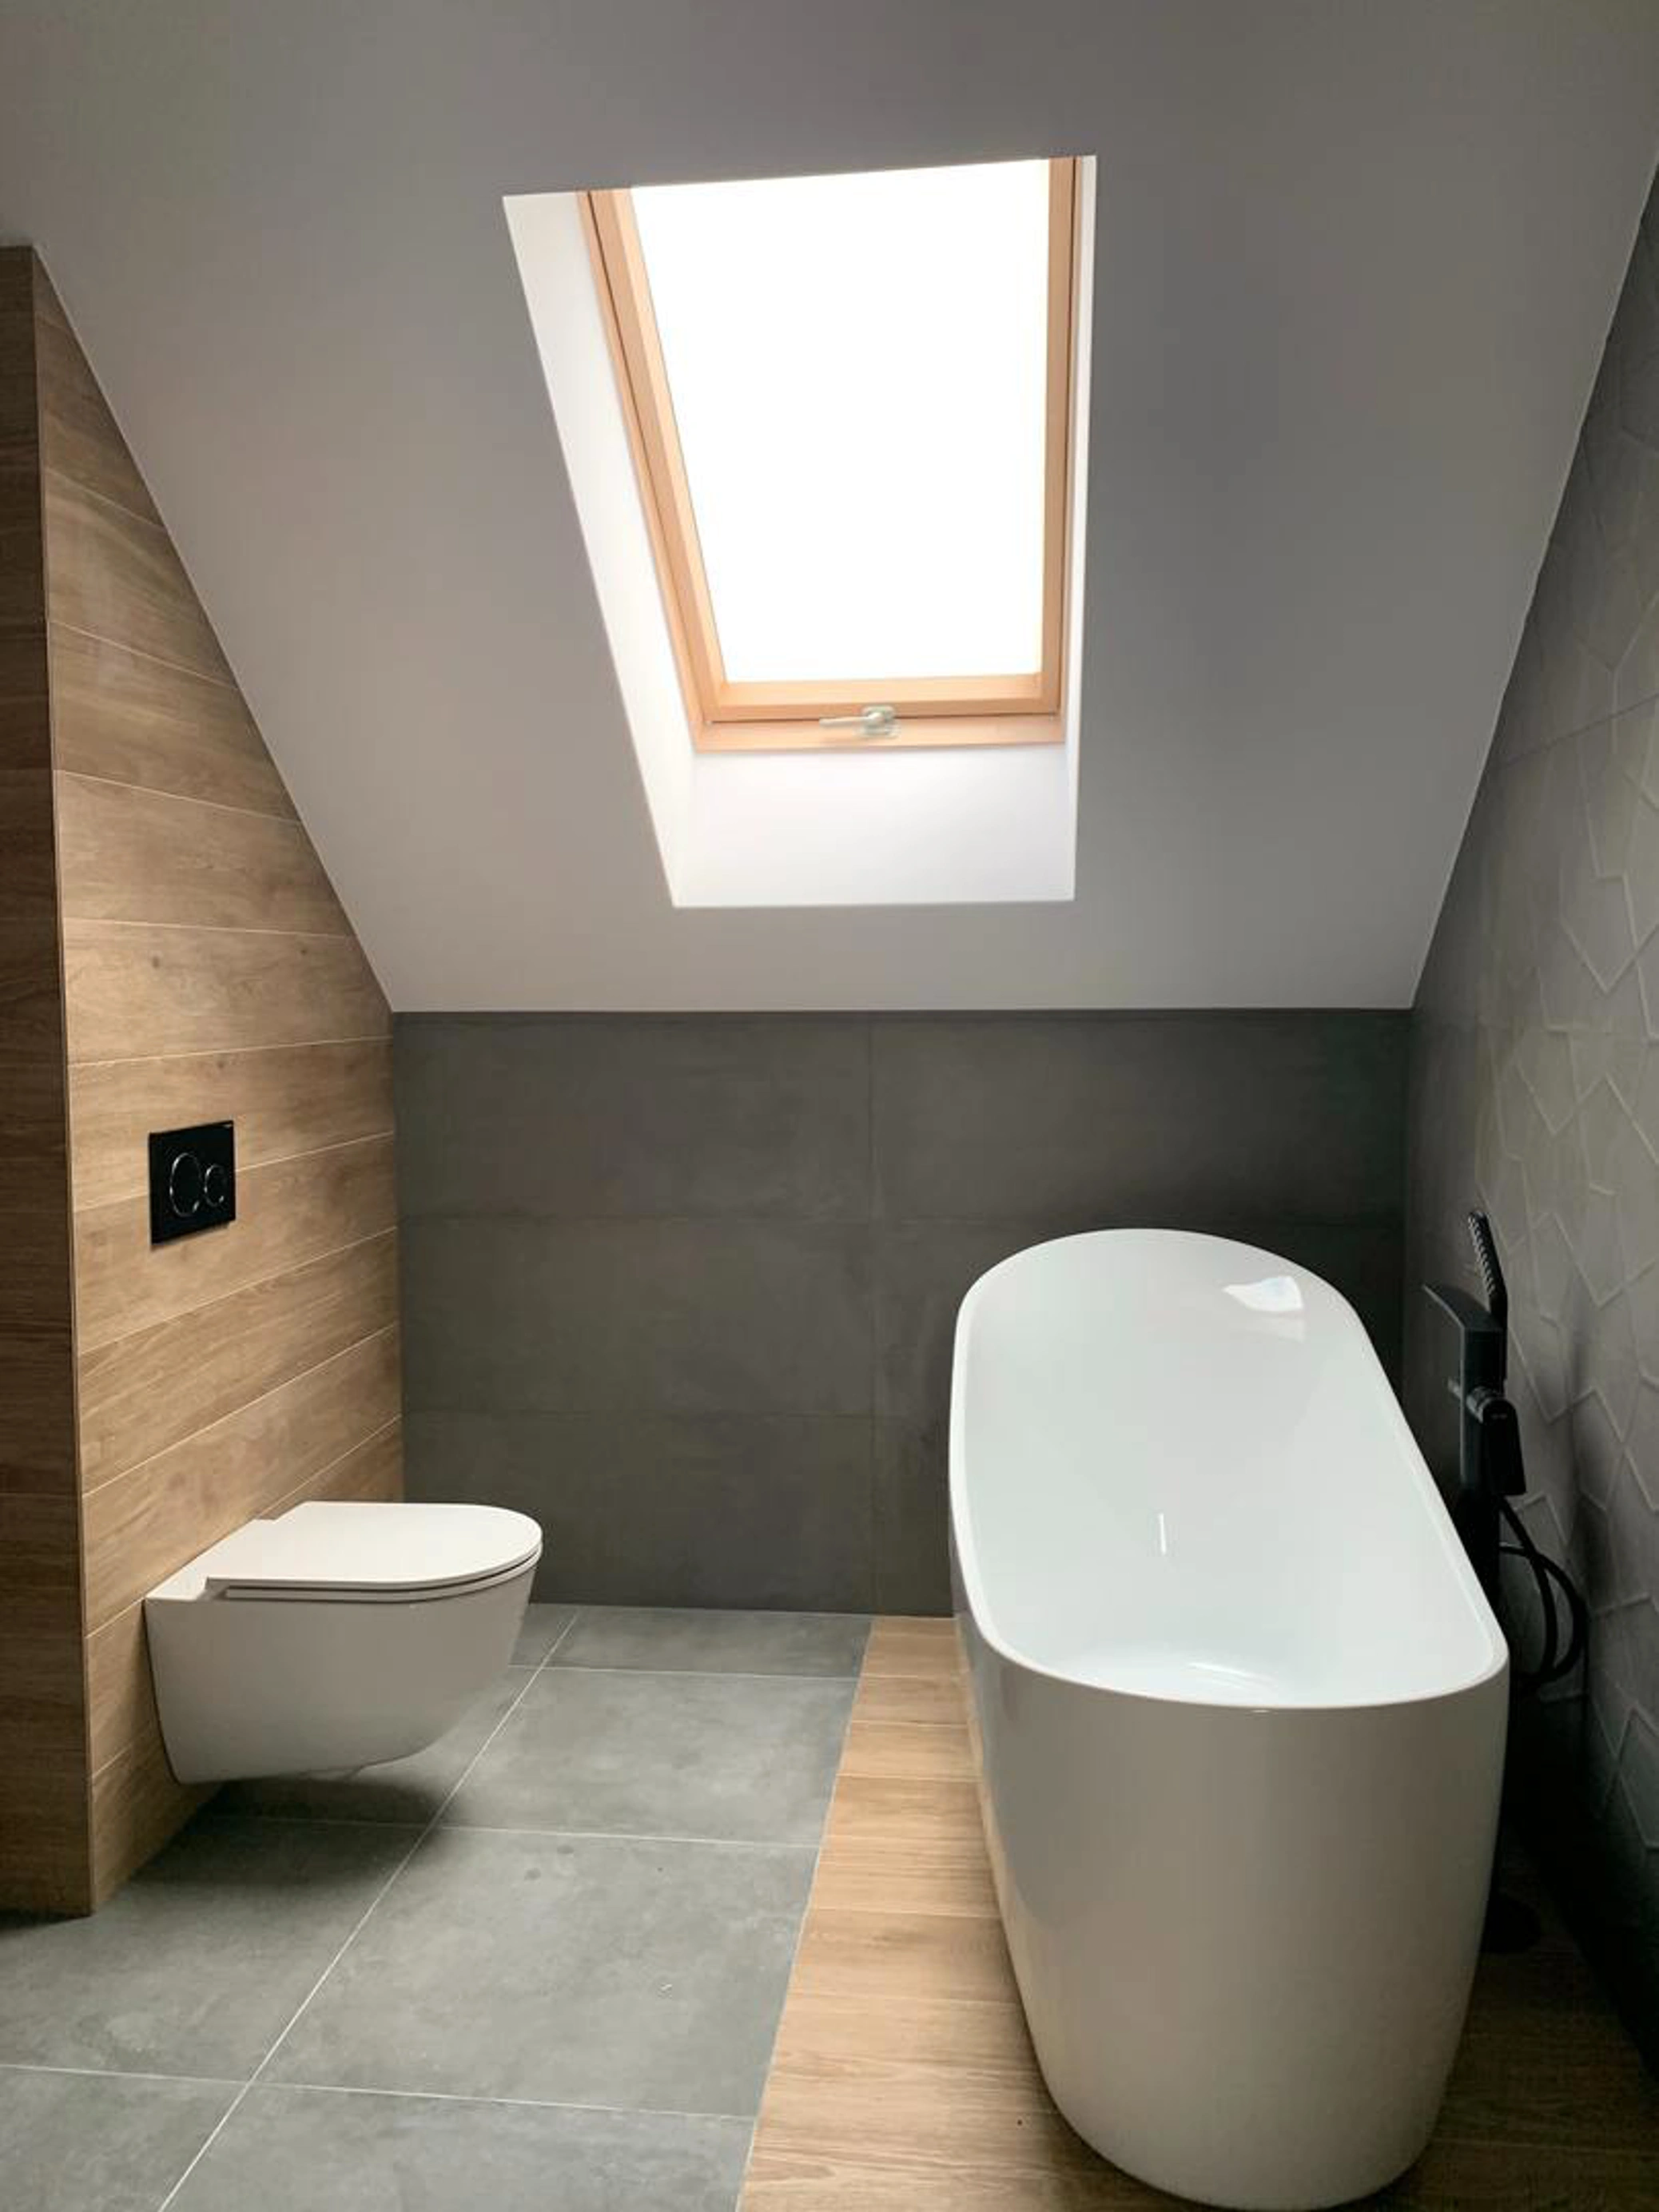 Skylight window in modern bathroom